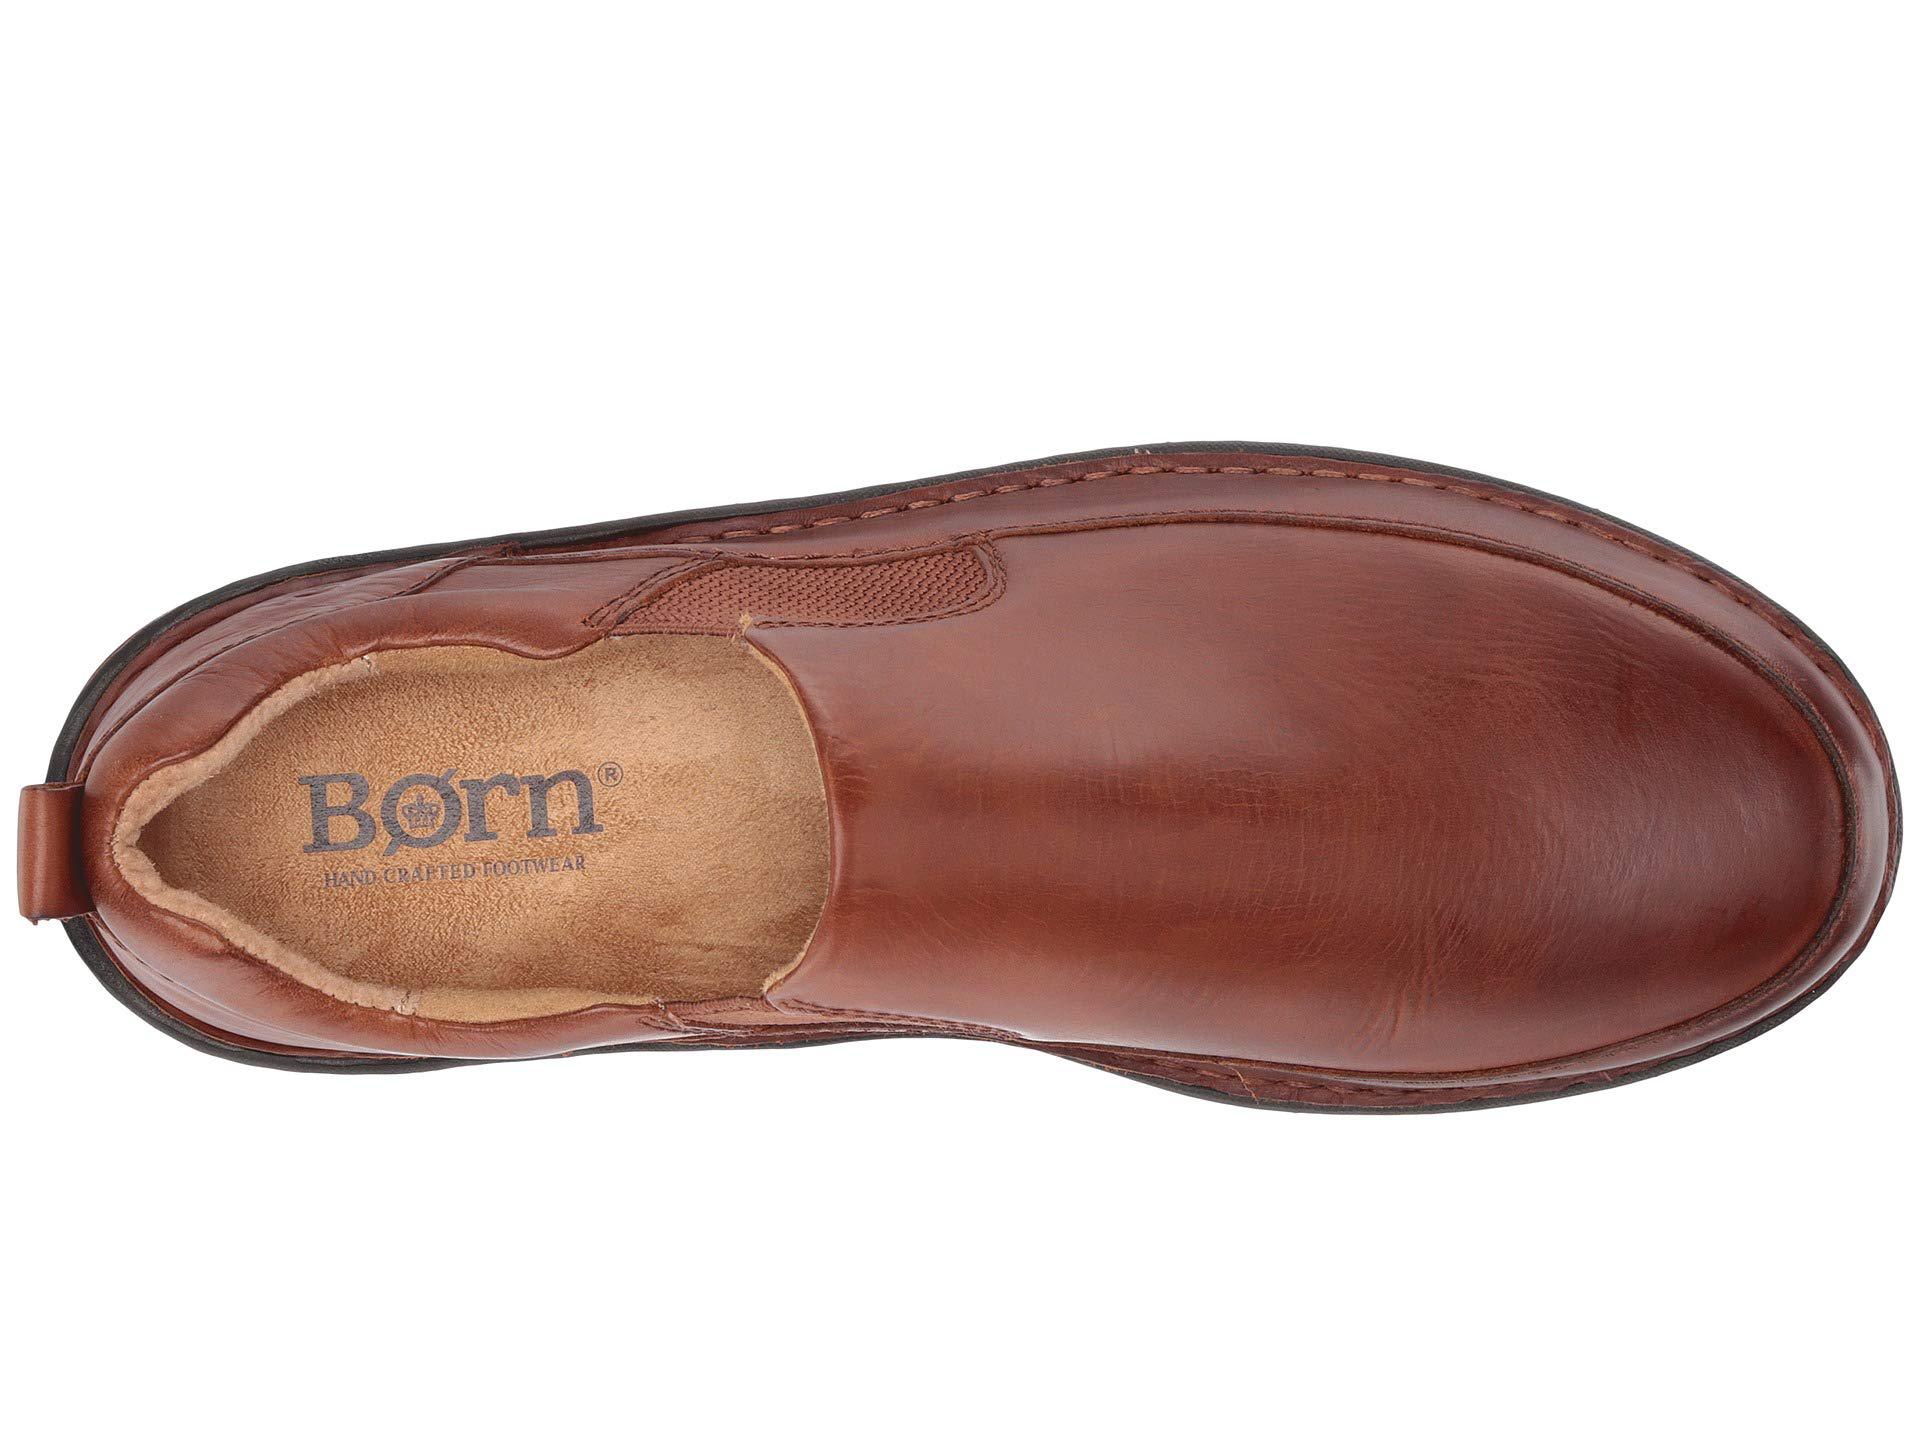 born kent shoes